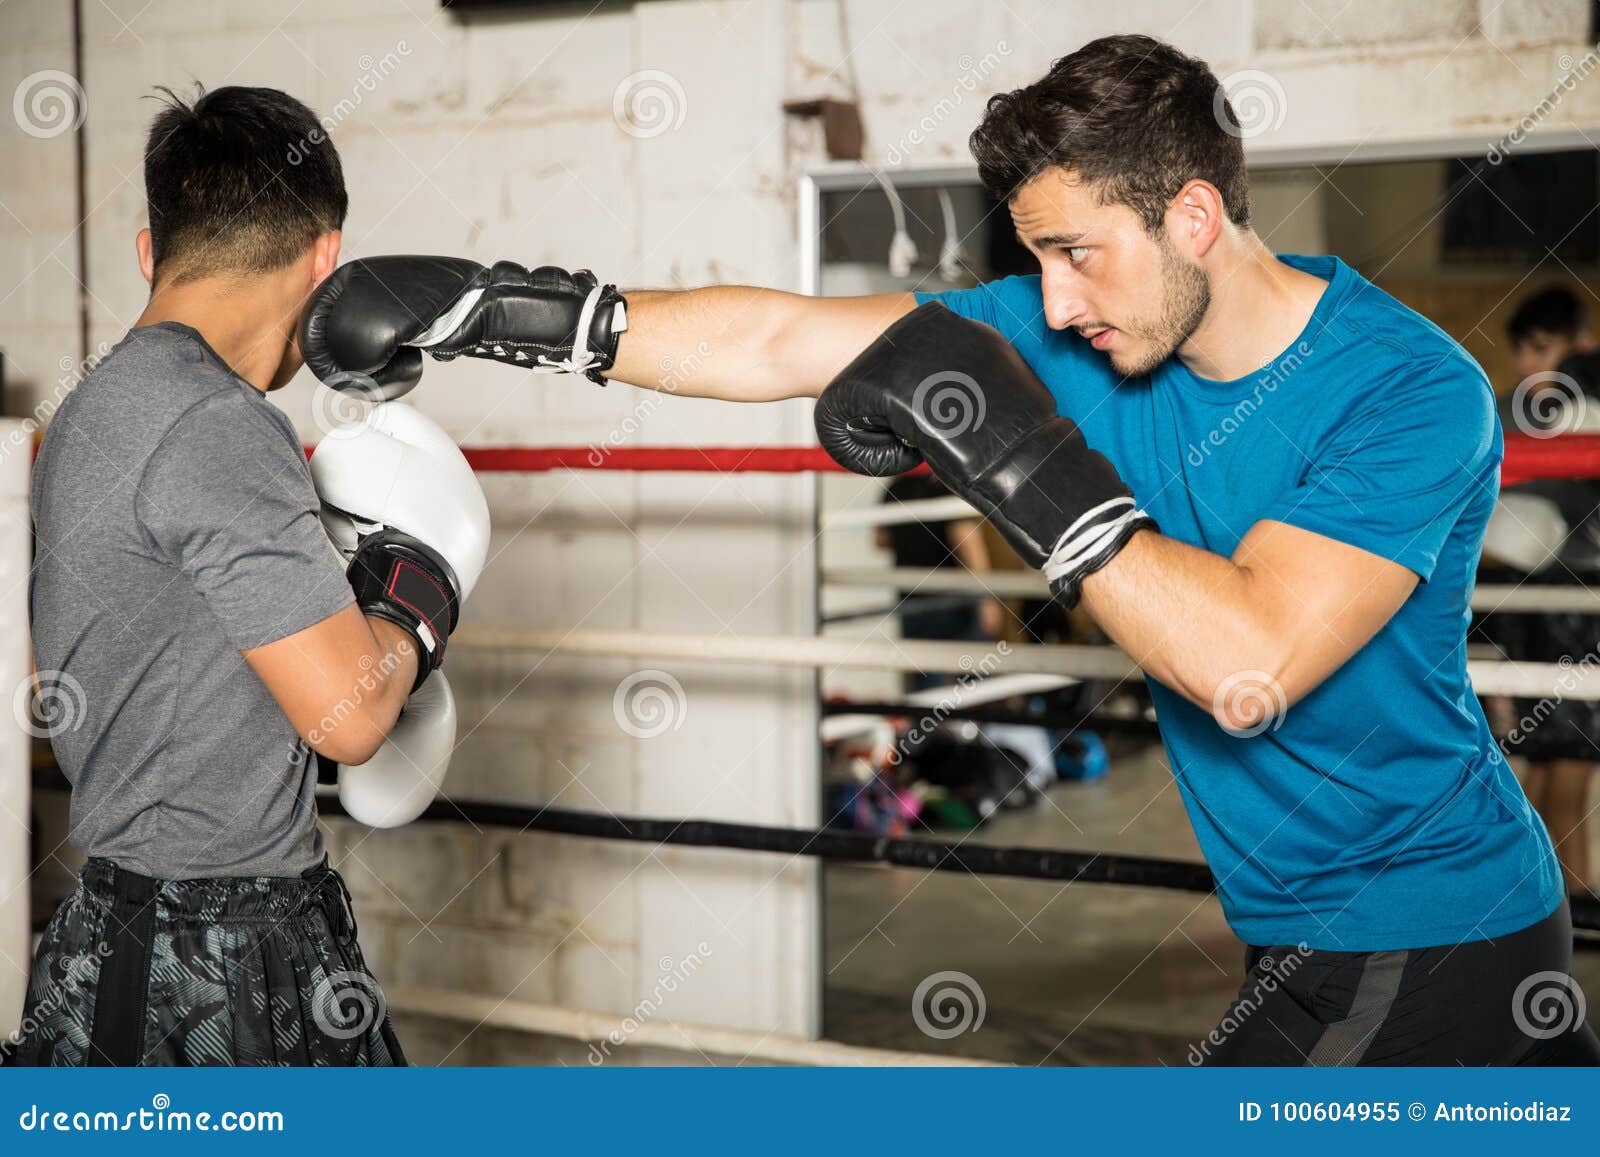 Бокс в парах. Бокс работа в парах. Тренировка бокс пара приема.